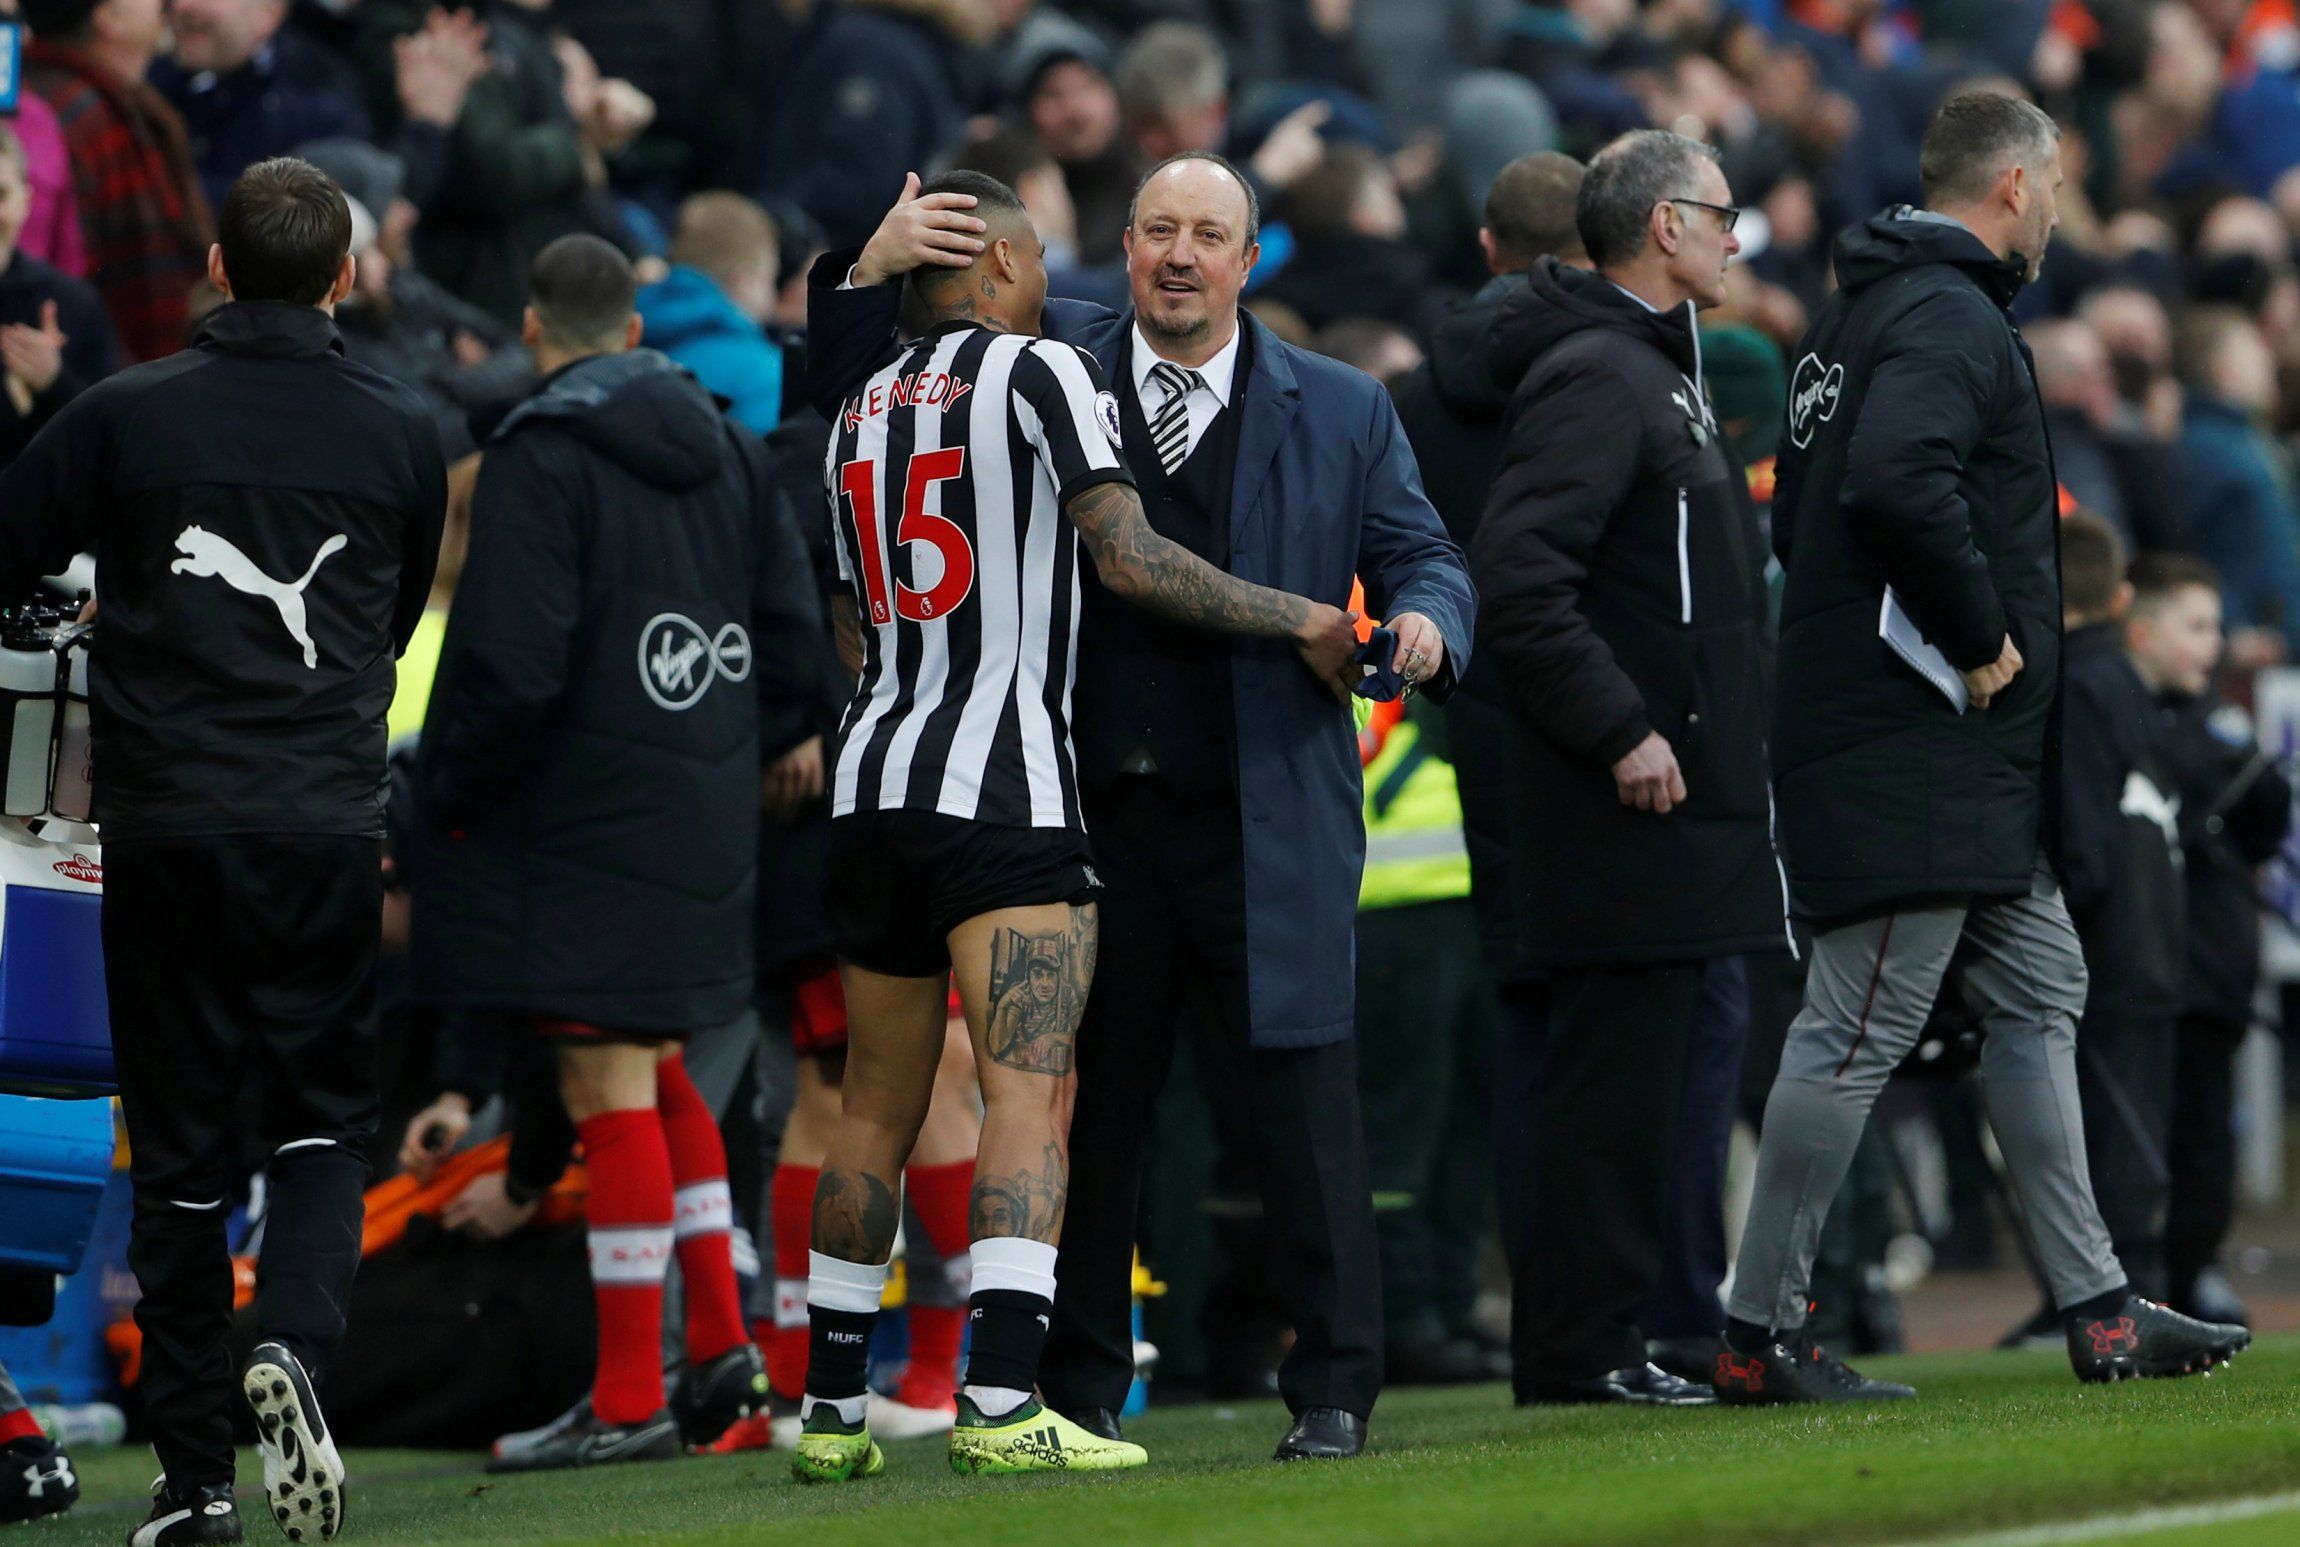 Newcastle manager Rafa Benitez embraces Kenedy